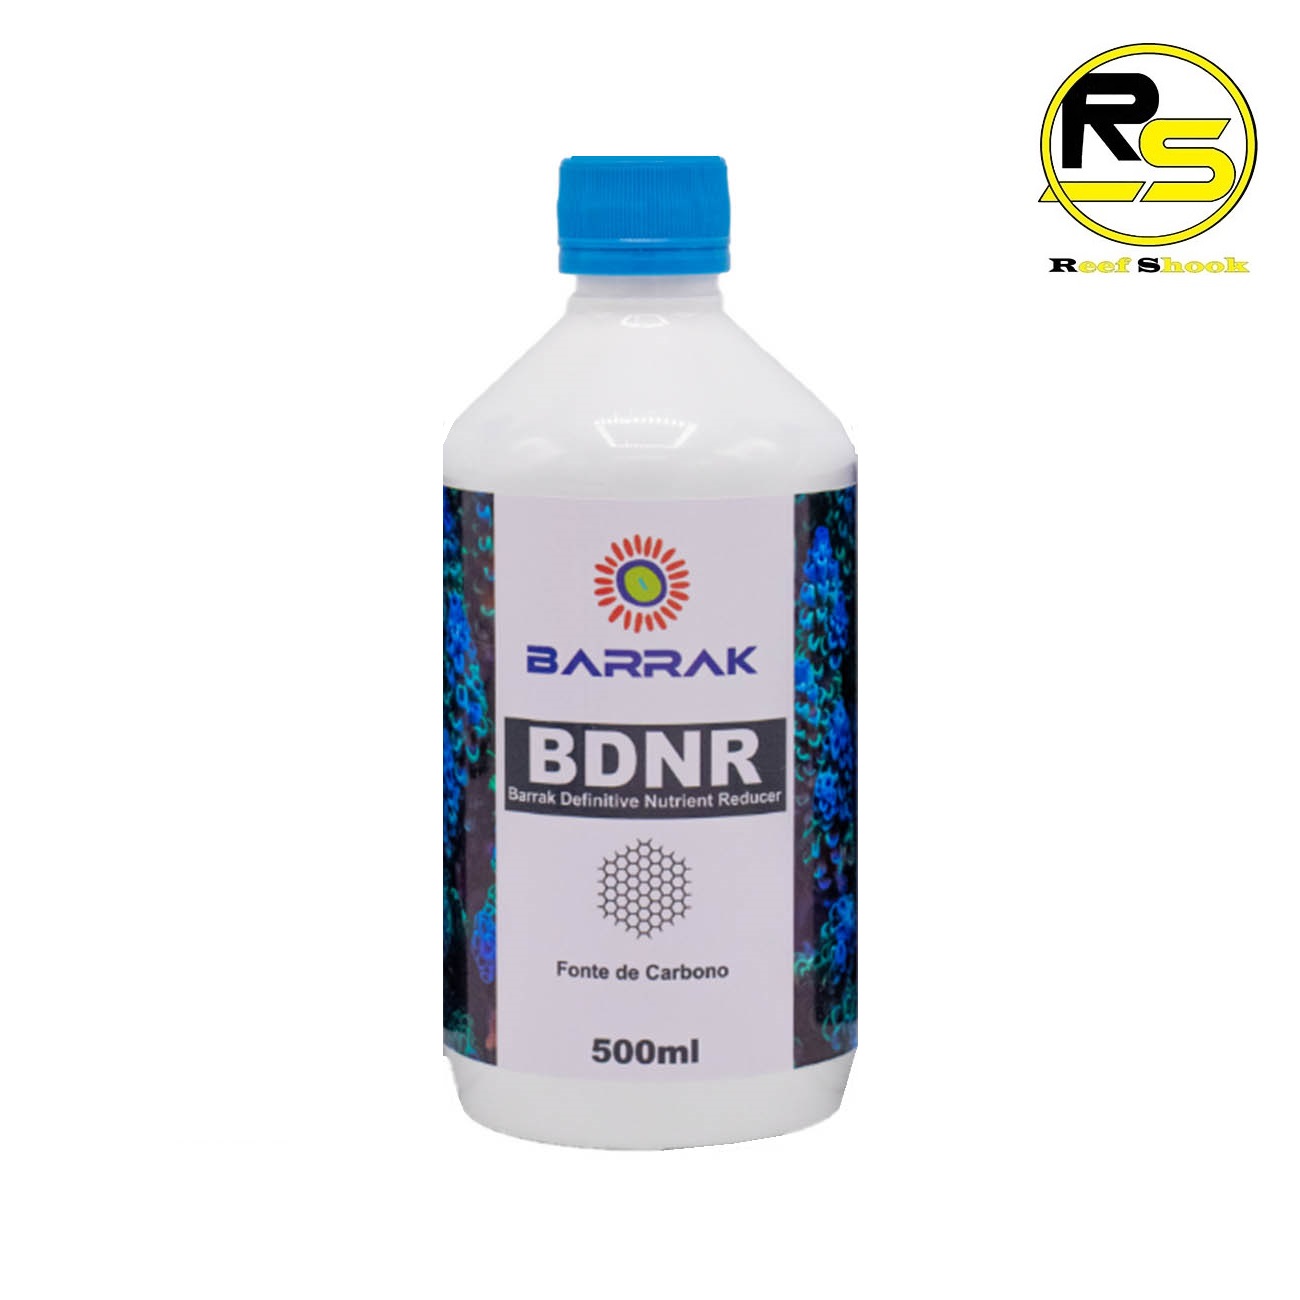 BDNR Barrak Redutor de Nitrato e Fosfato 500ml